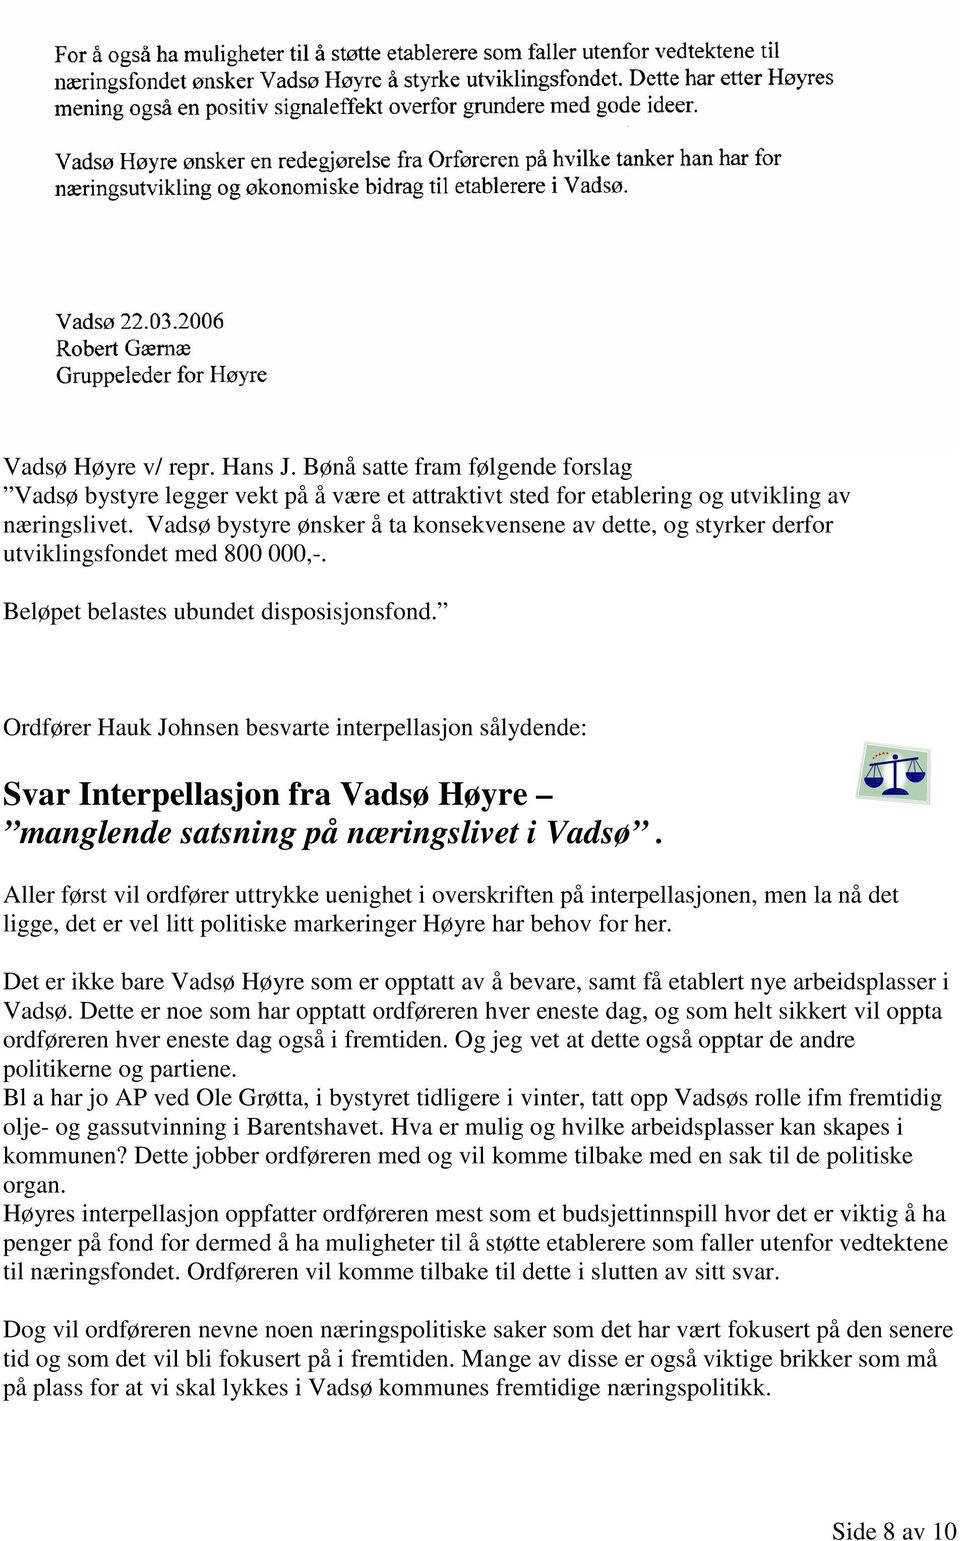 Ordfører Hauk Johnsen besvarte interpellasjon sålydende: Svar Interpellasjon fra Vadsø Høyre manglende satsning på næringslivet i Vadsø.